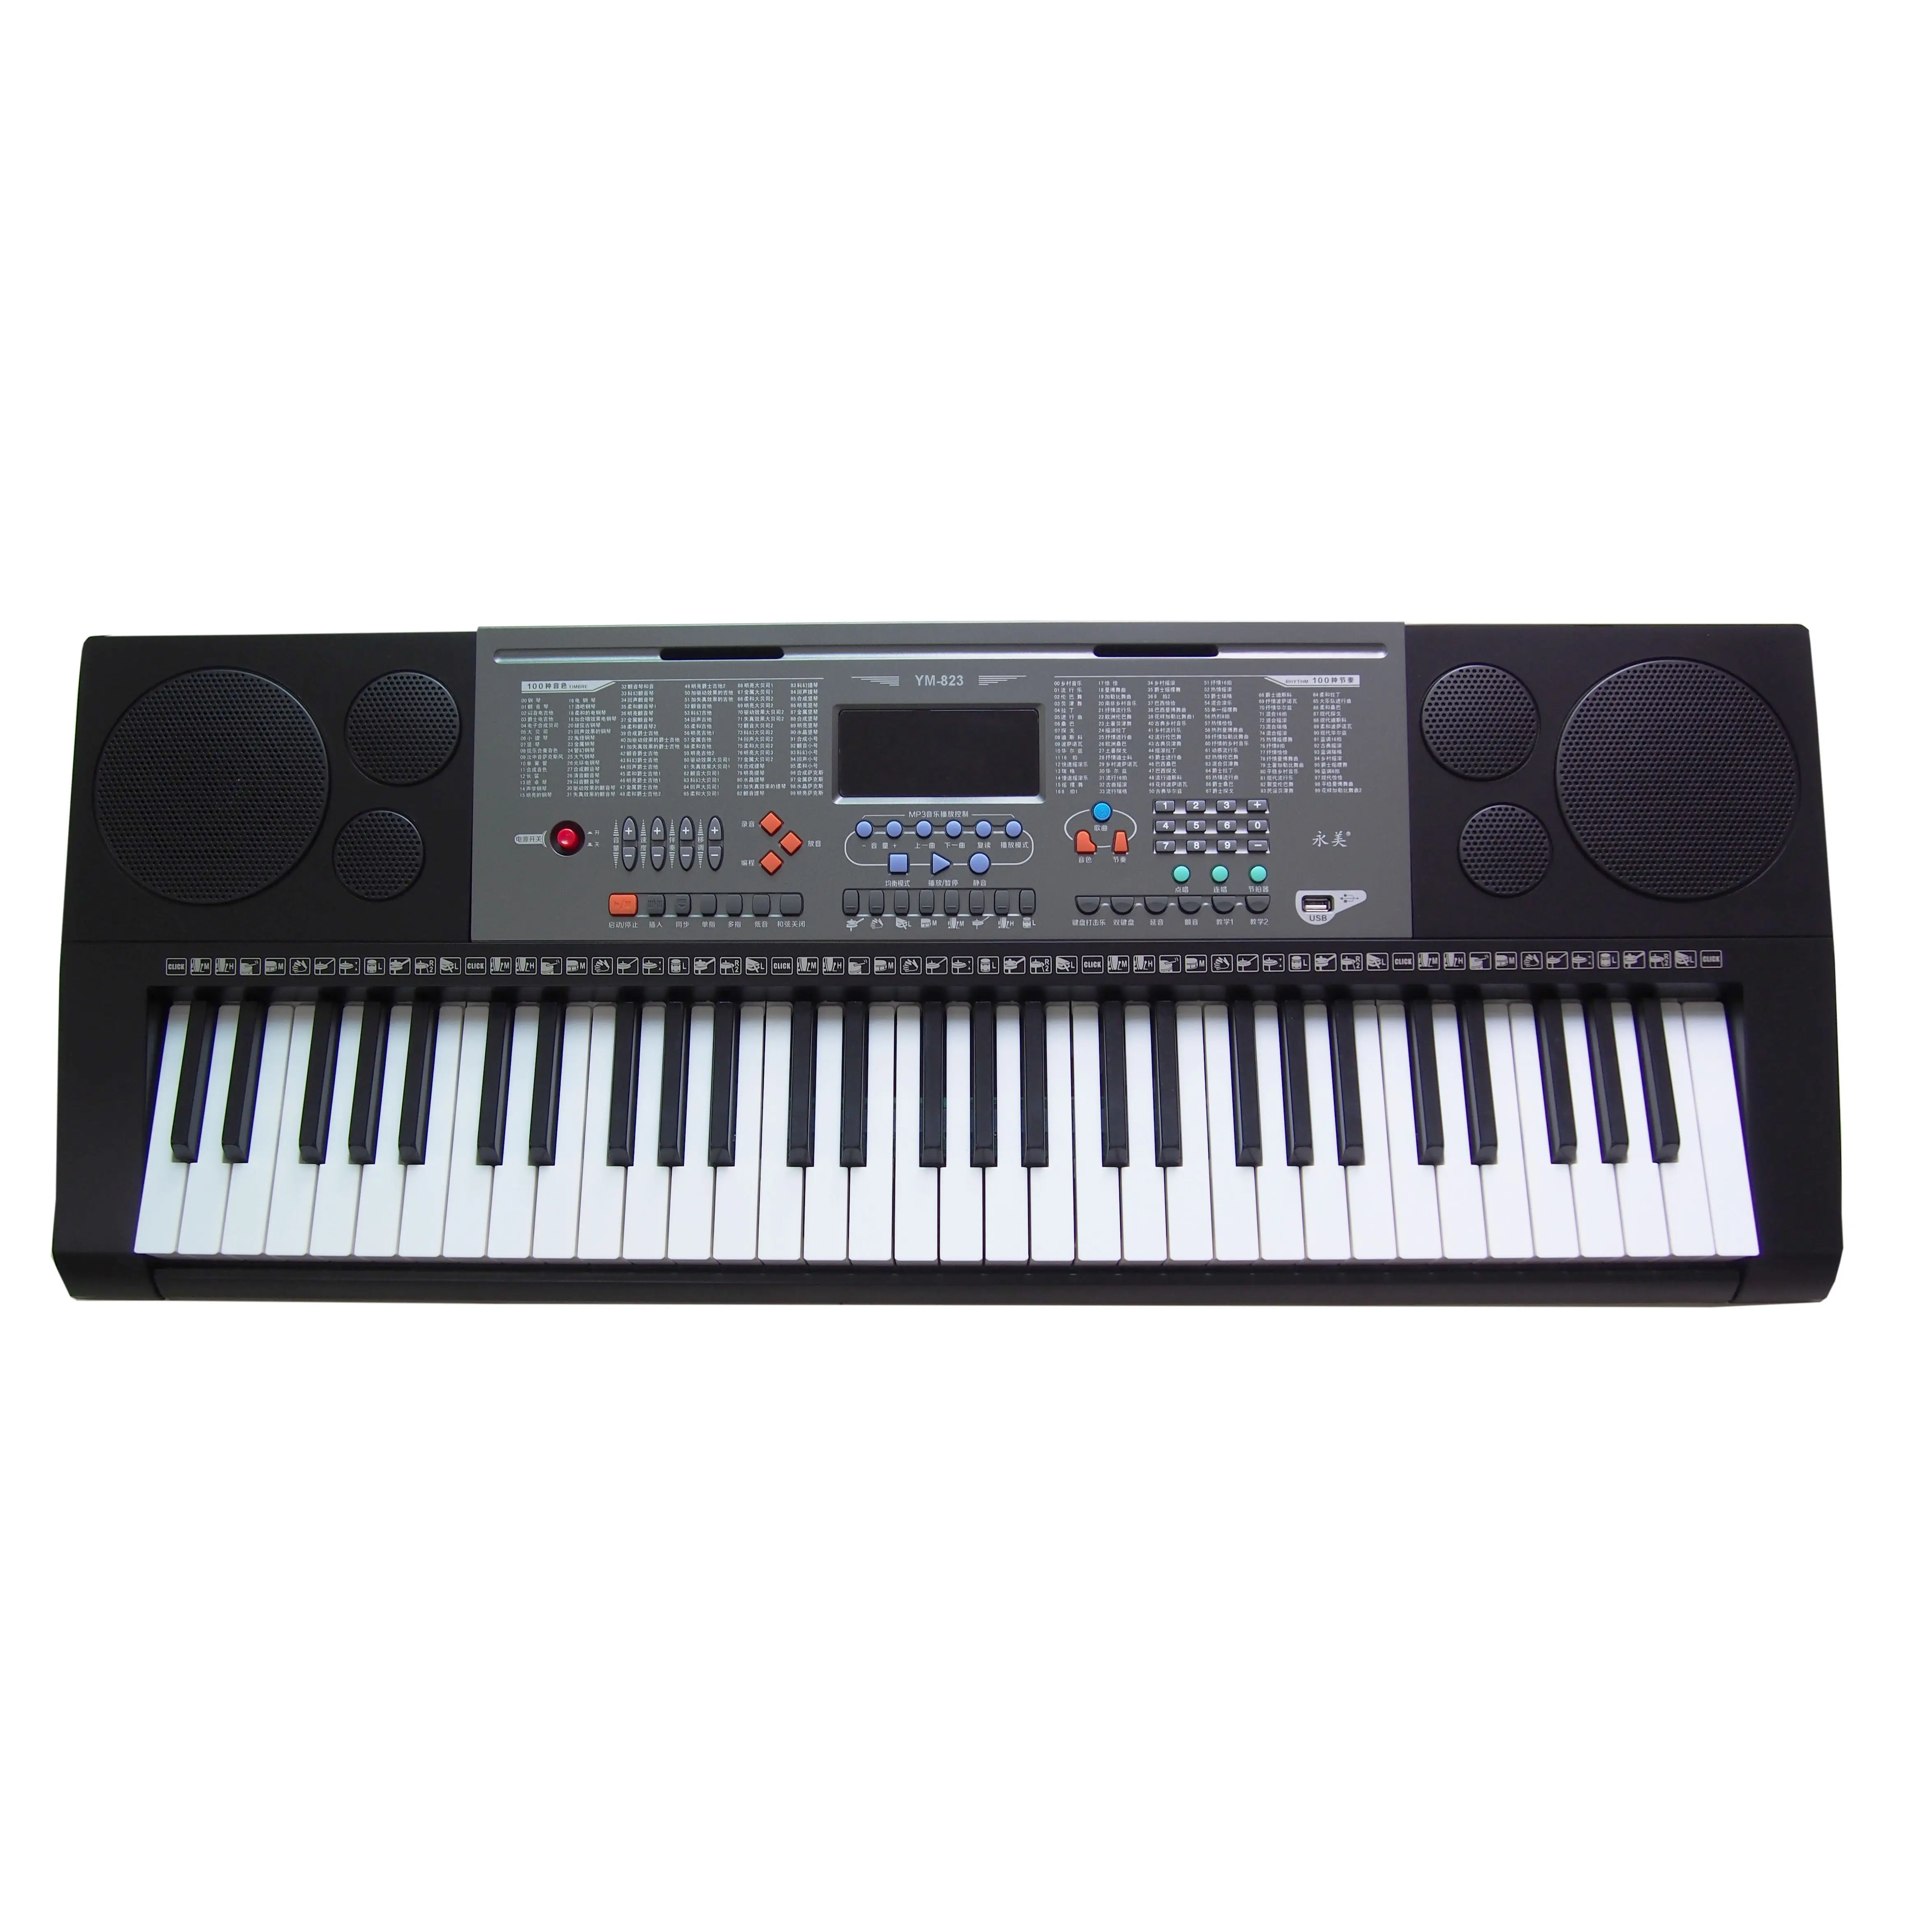 Alat Musik 61 Tombol Organ Elektronik Keyboard Synthesizer Piano dengan Fungsi Pengajaran